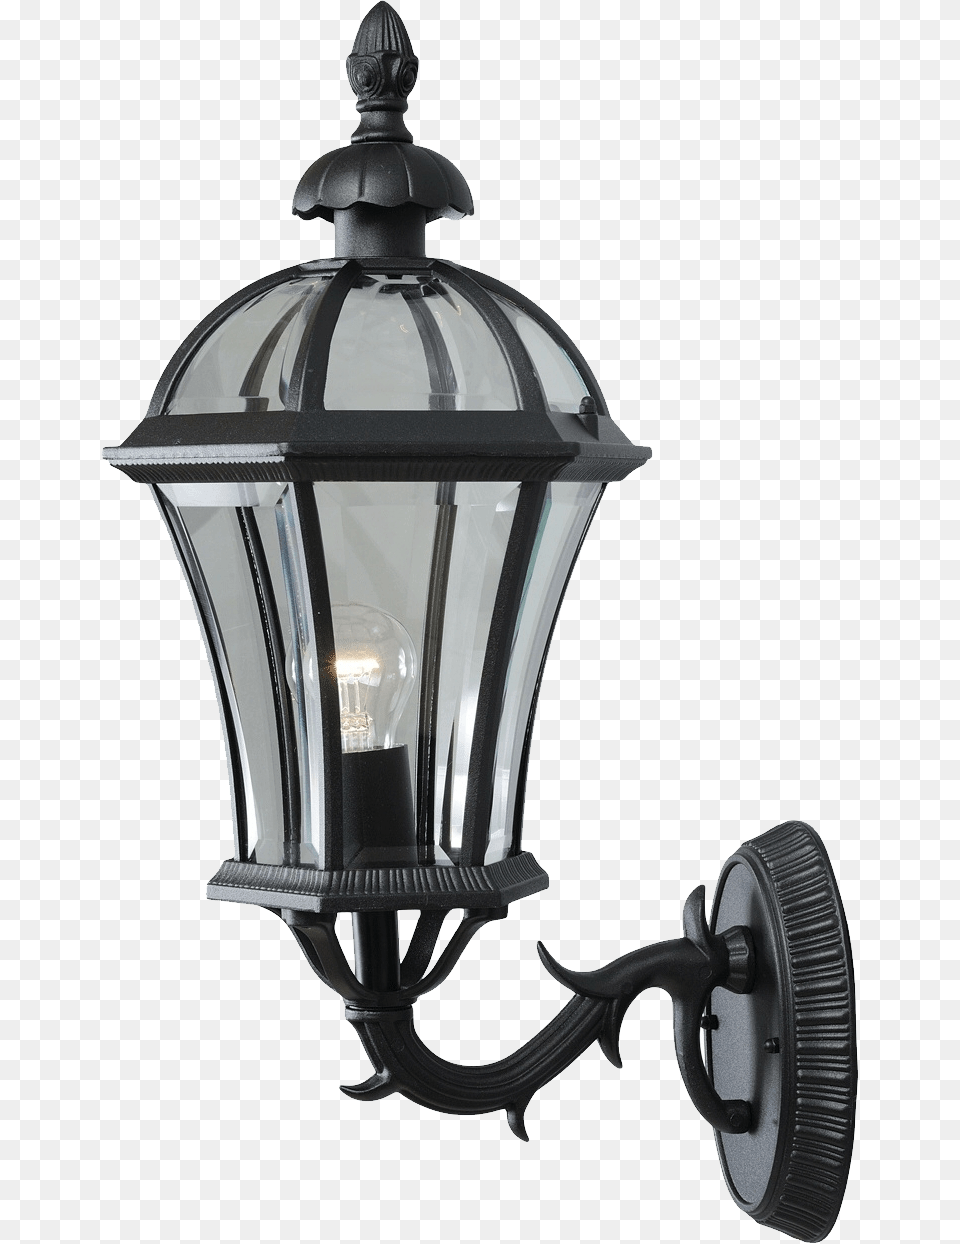 Clip Art Of Street Lights, Lamp, Light Fixture Free Png